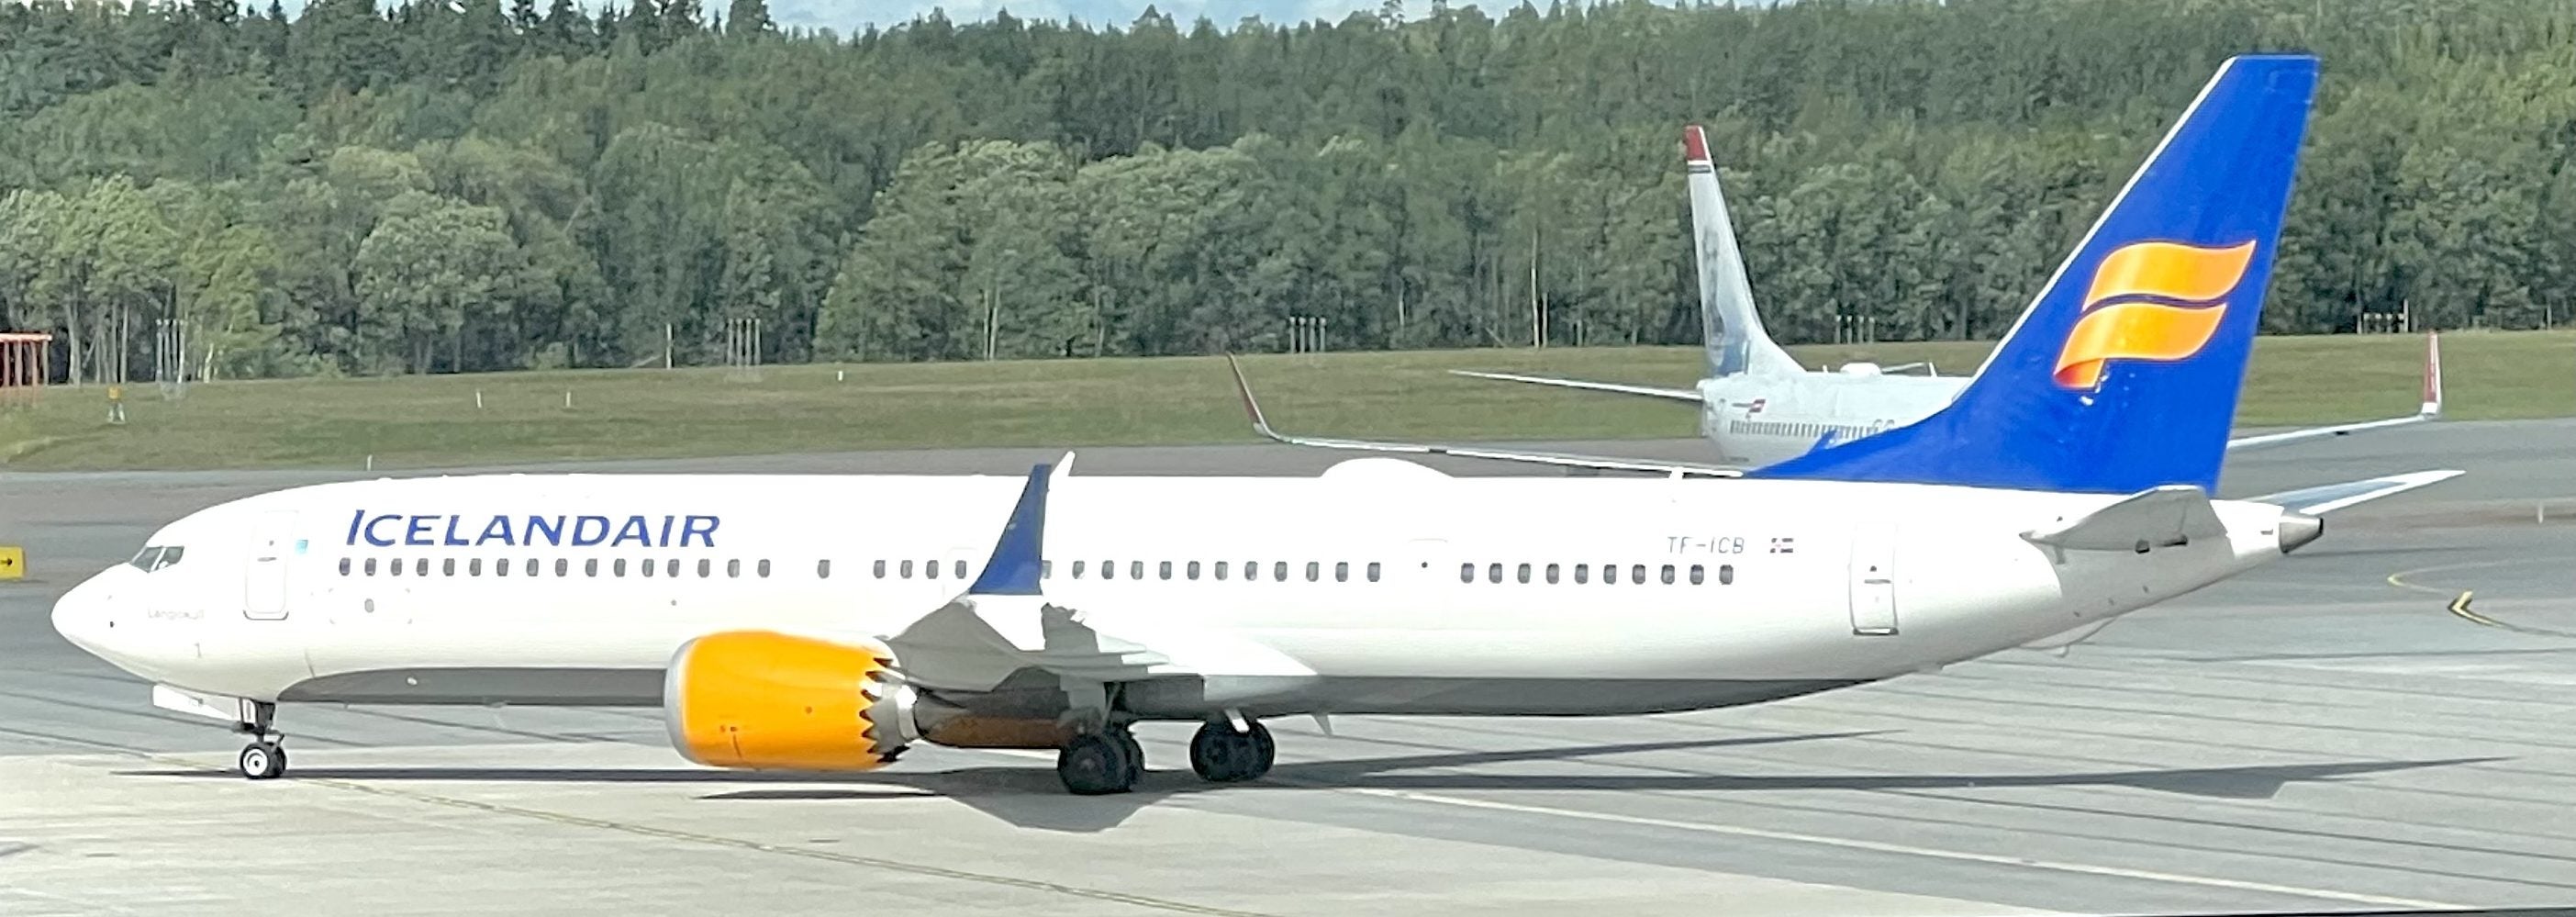 Icelandair Boeing 737 MAX at Stockholm Arlanda airport ARN